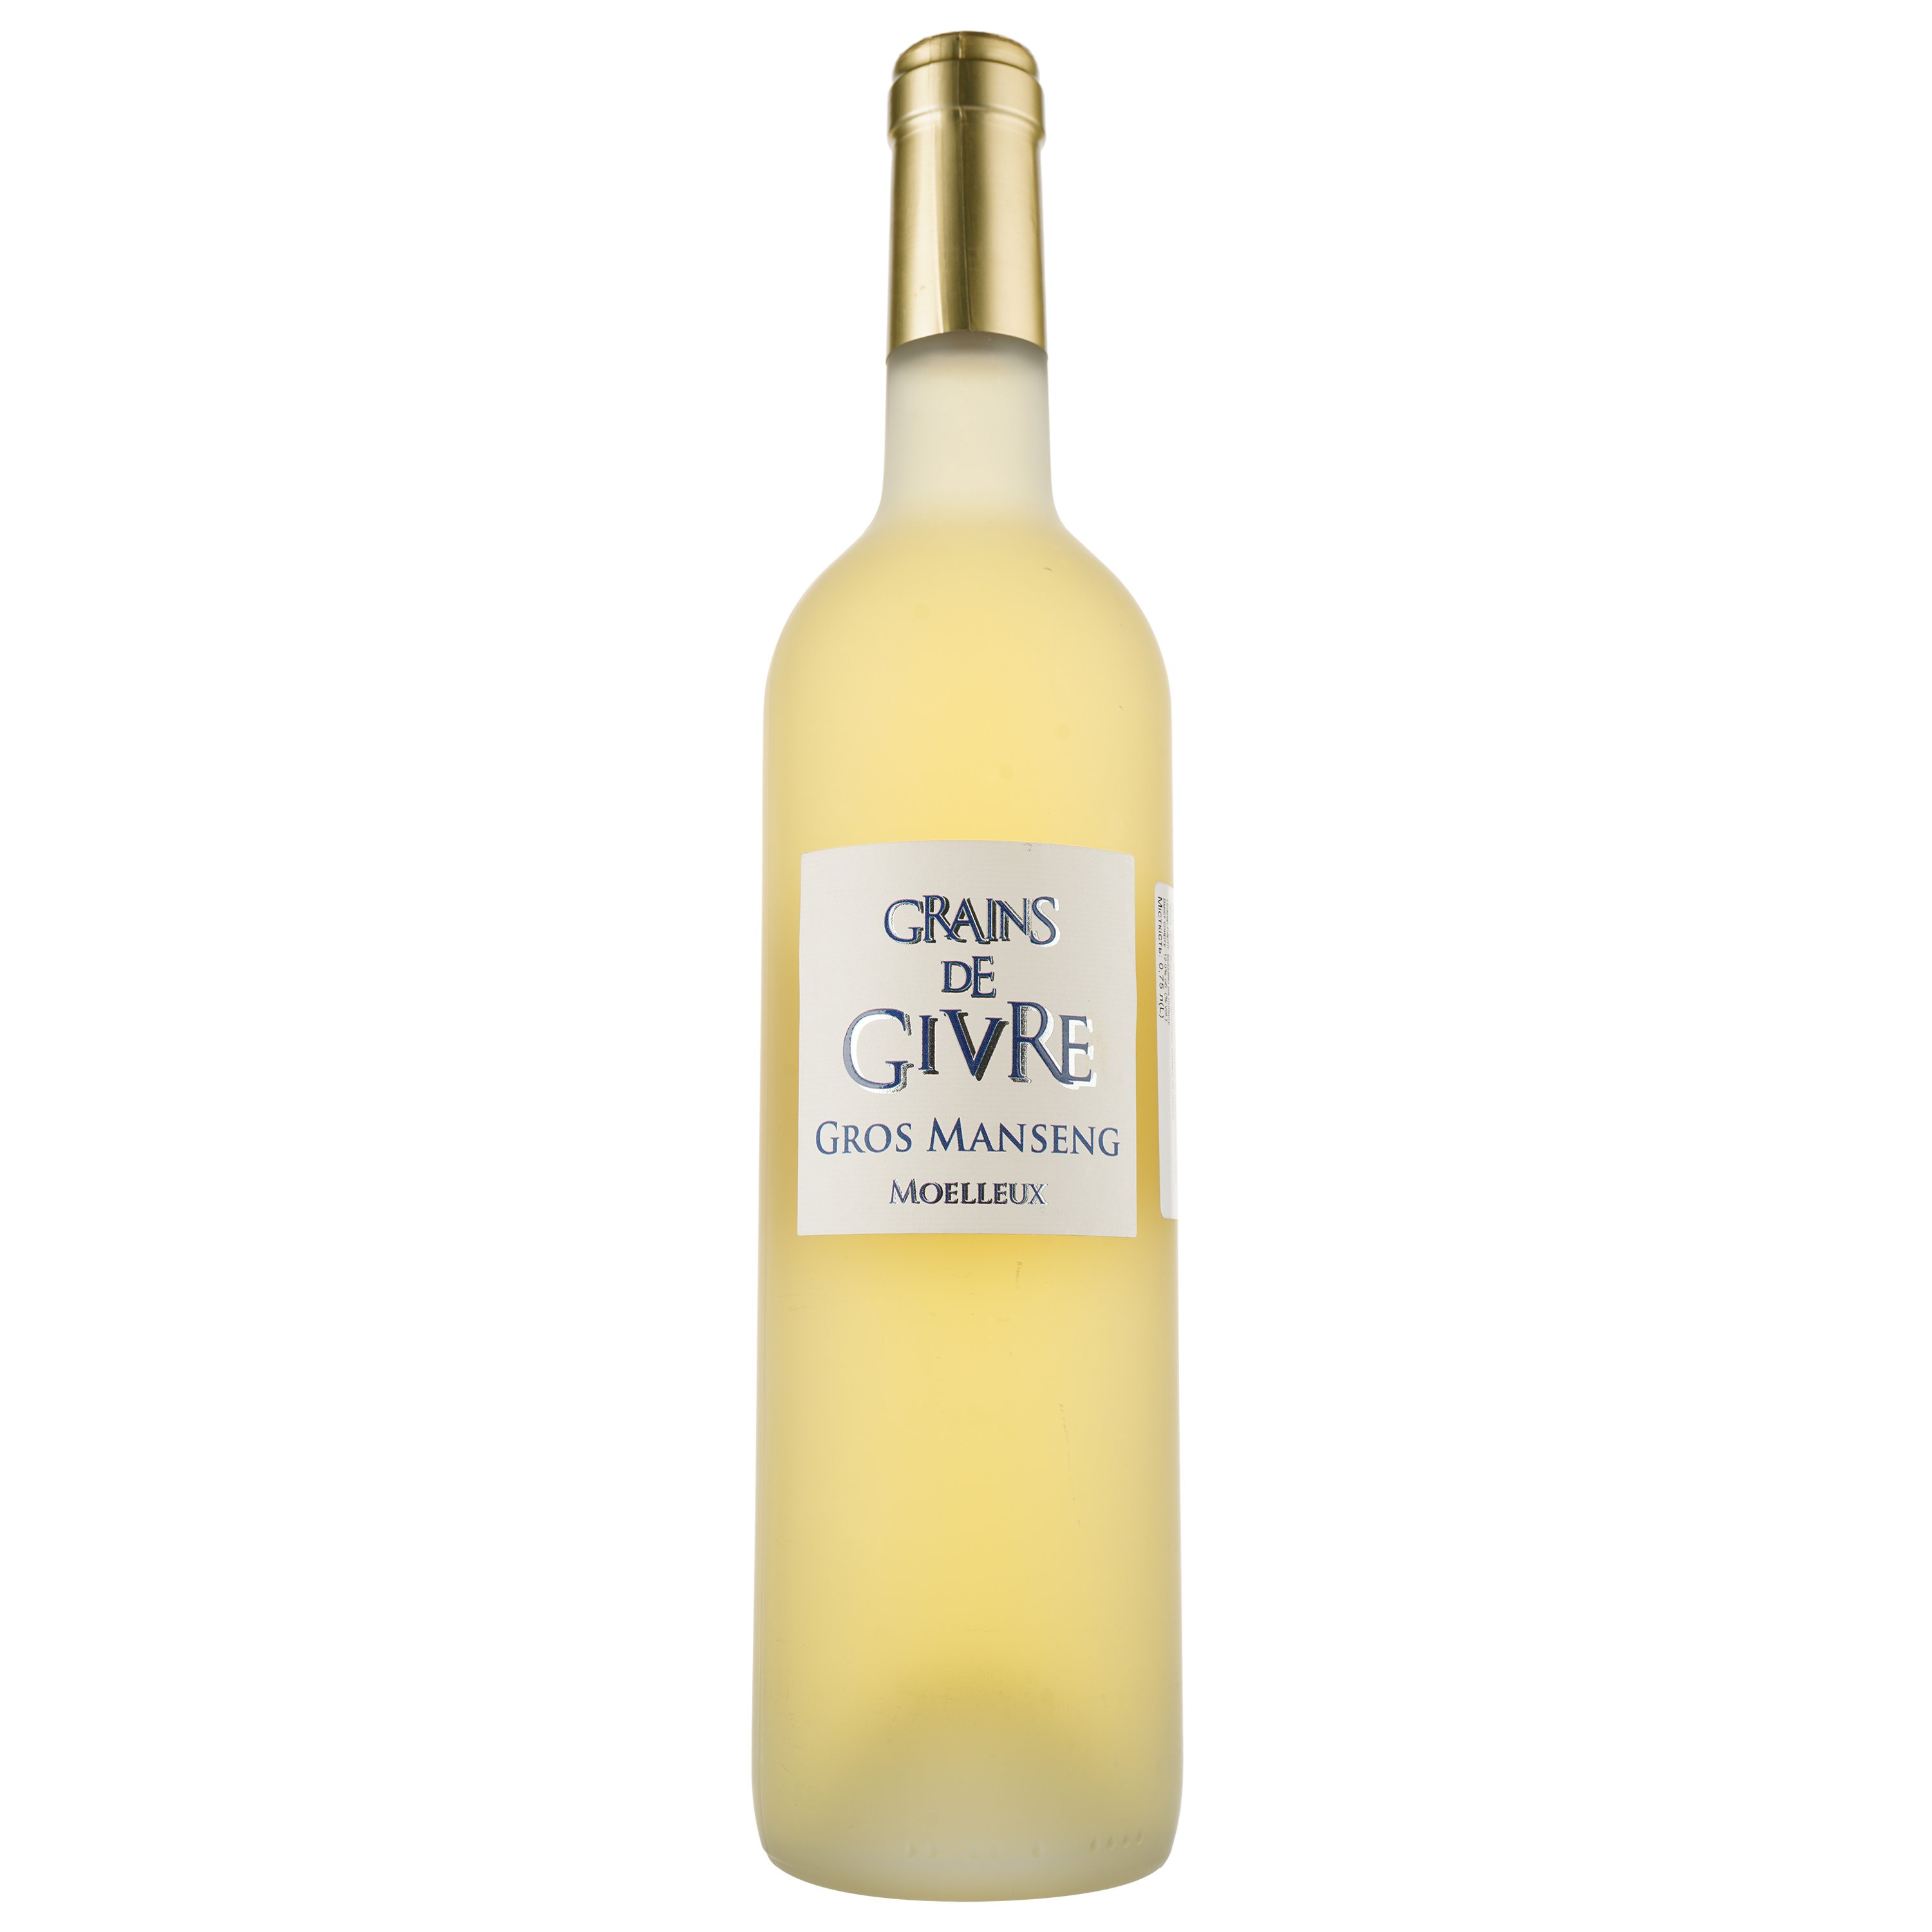 Вино Grains de Givre Gros Manseng 2022 IGP Cotes de Gascogne, біле, напівсолодке, 0,75 л - фото 1